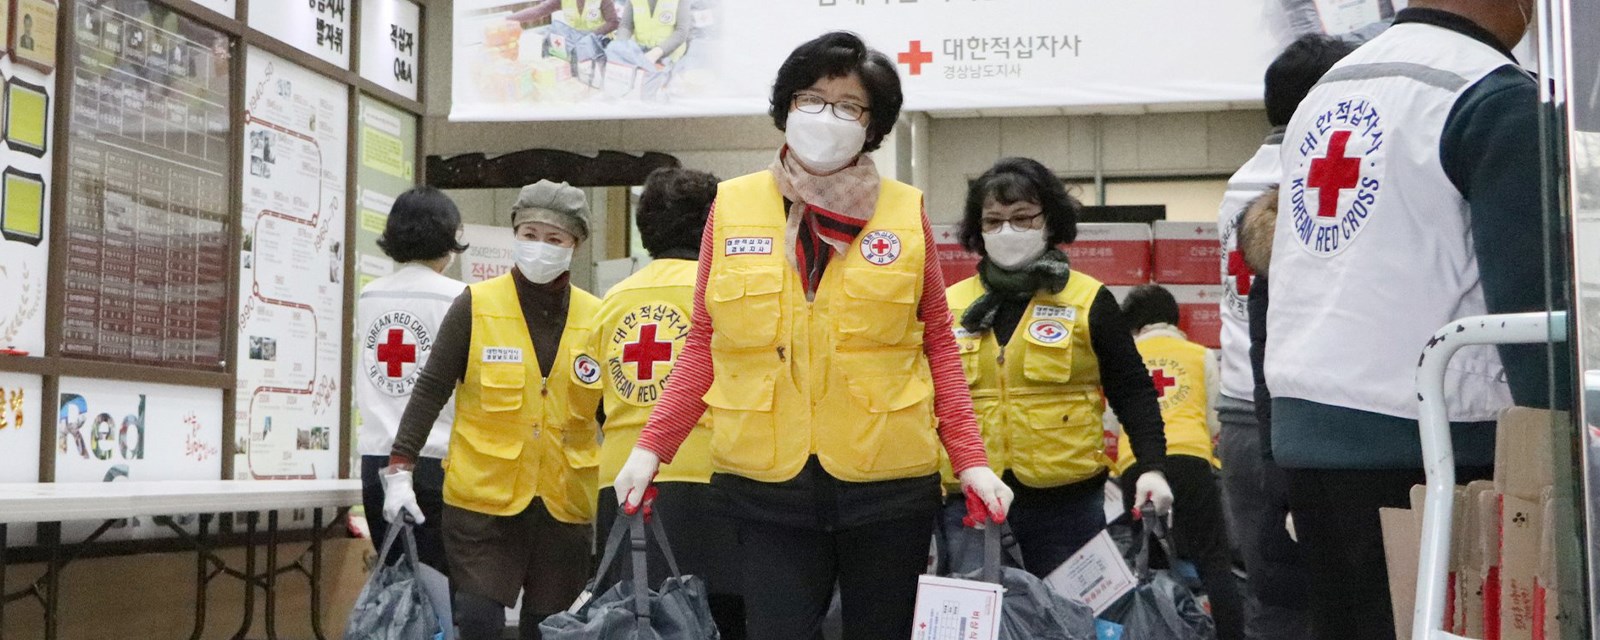 En gruppe mennesker med Røde Kors-vester som bærer varer